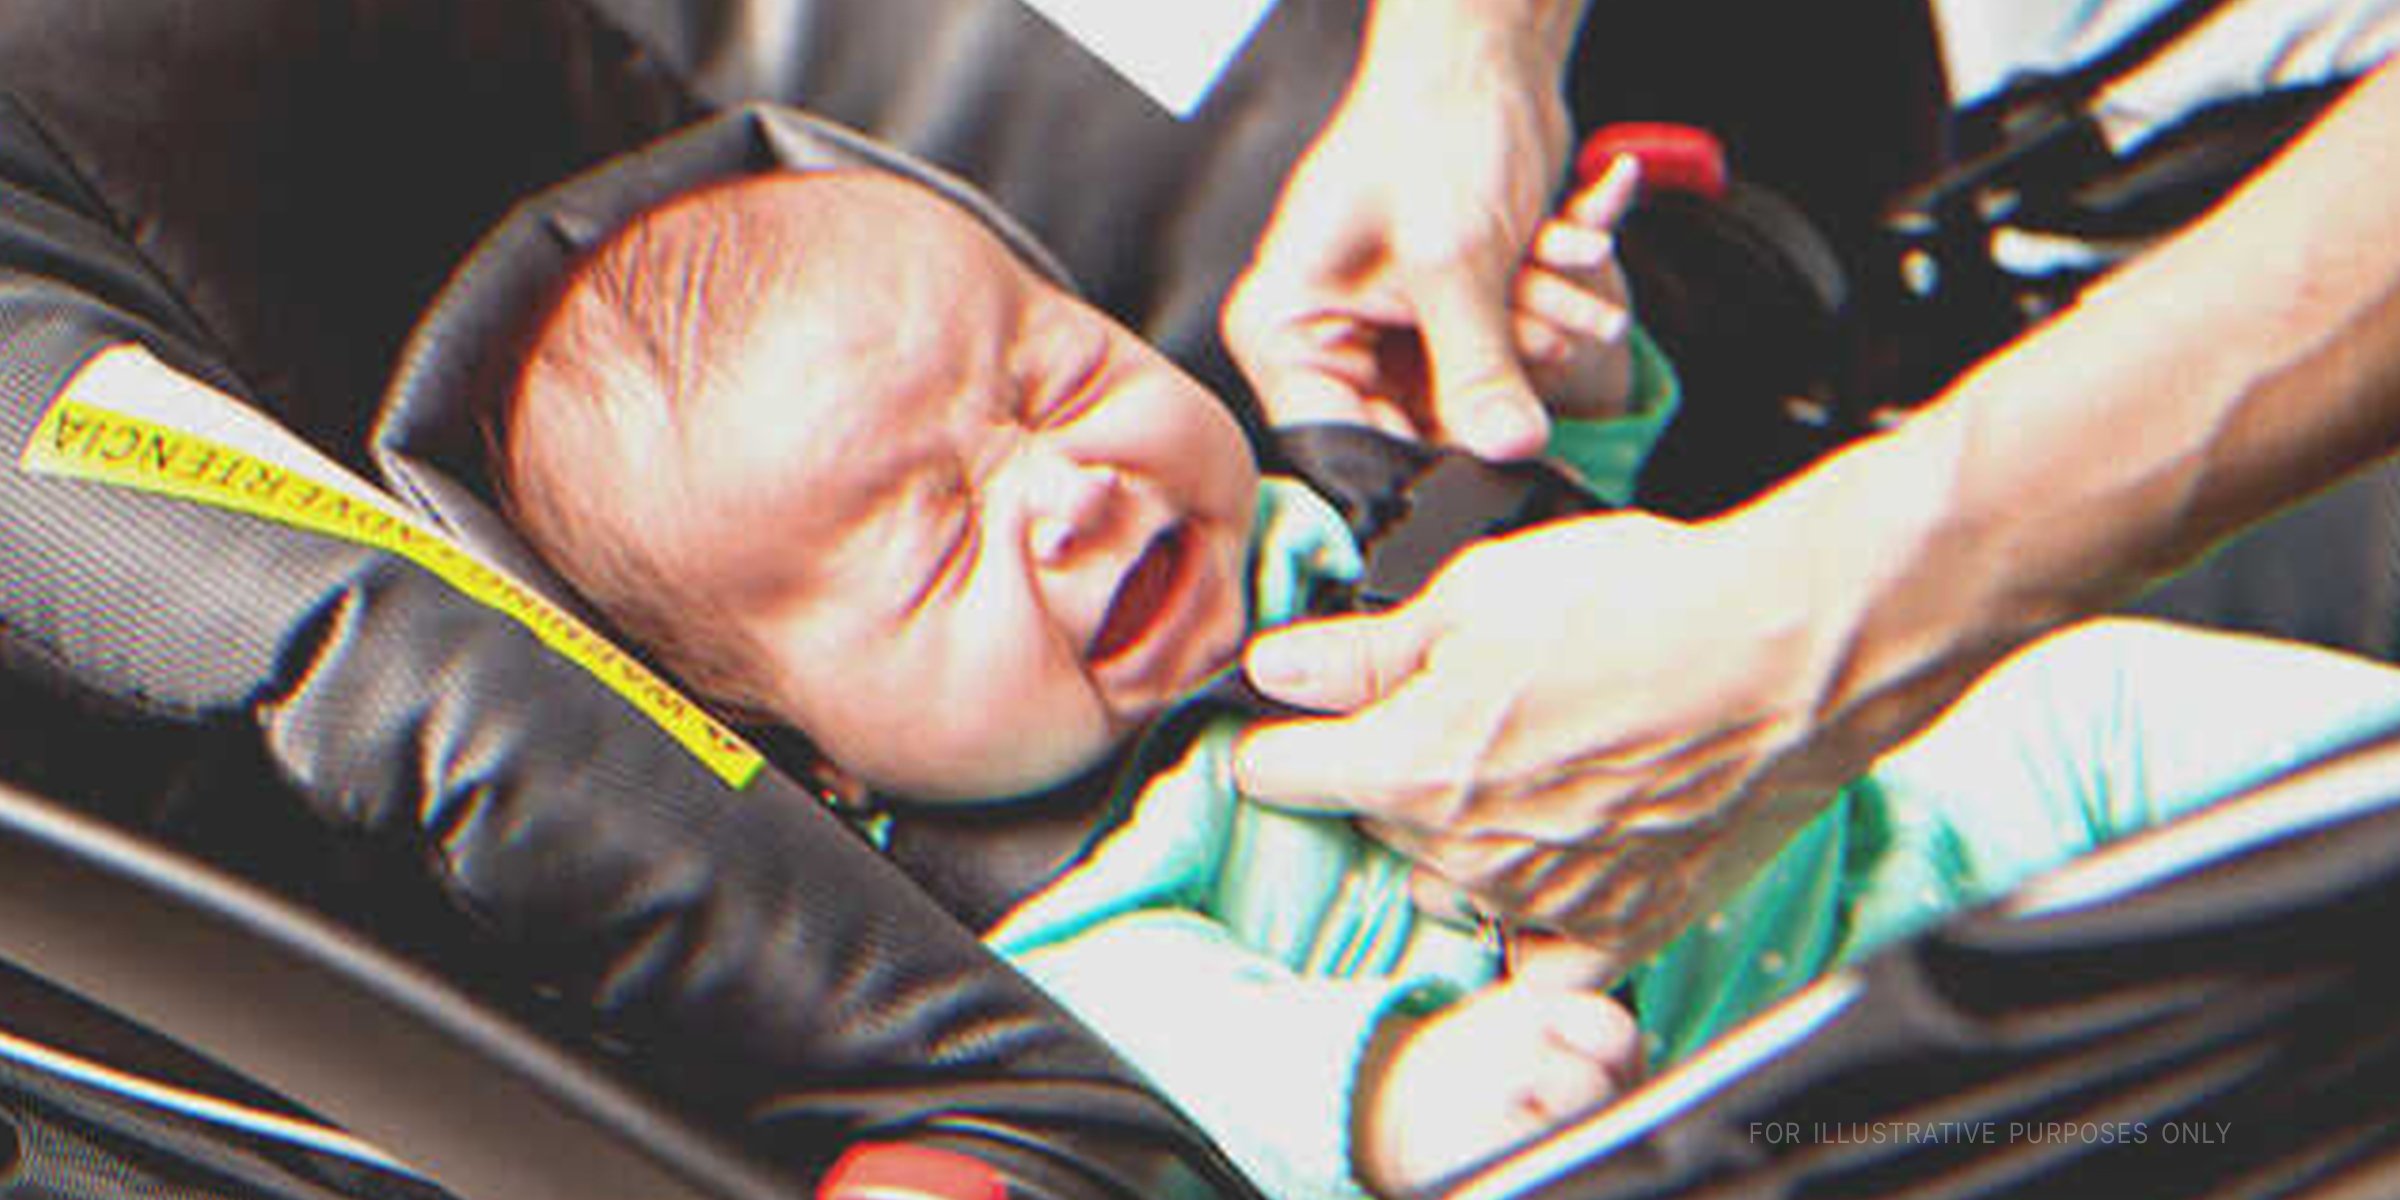 Schreiendes Baby im Tragebettchen | Quelle: Shutterstock